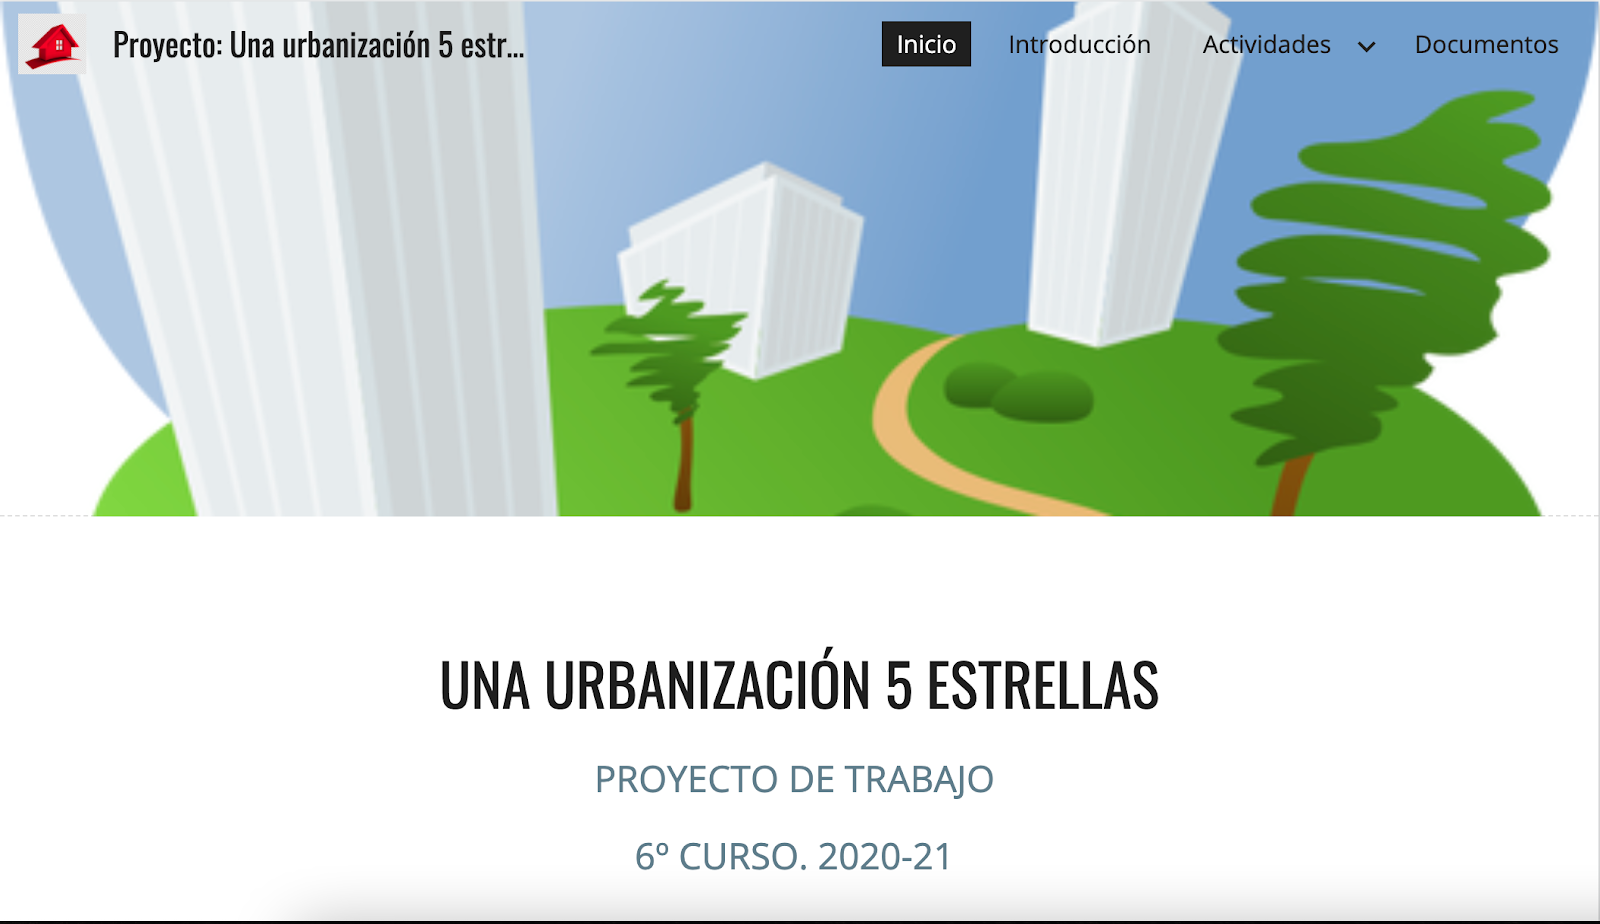 Proyecto: Una urbanización 5 estrellaas